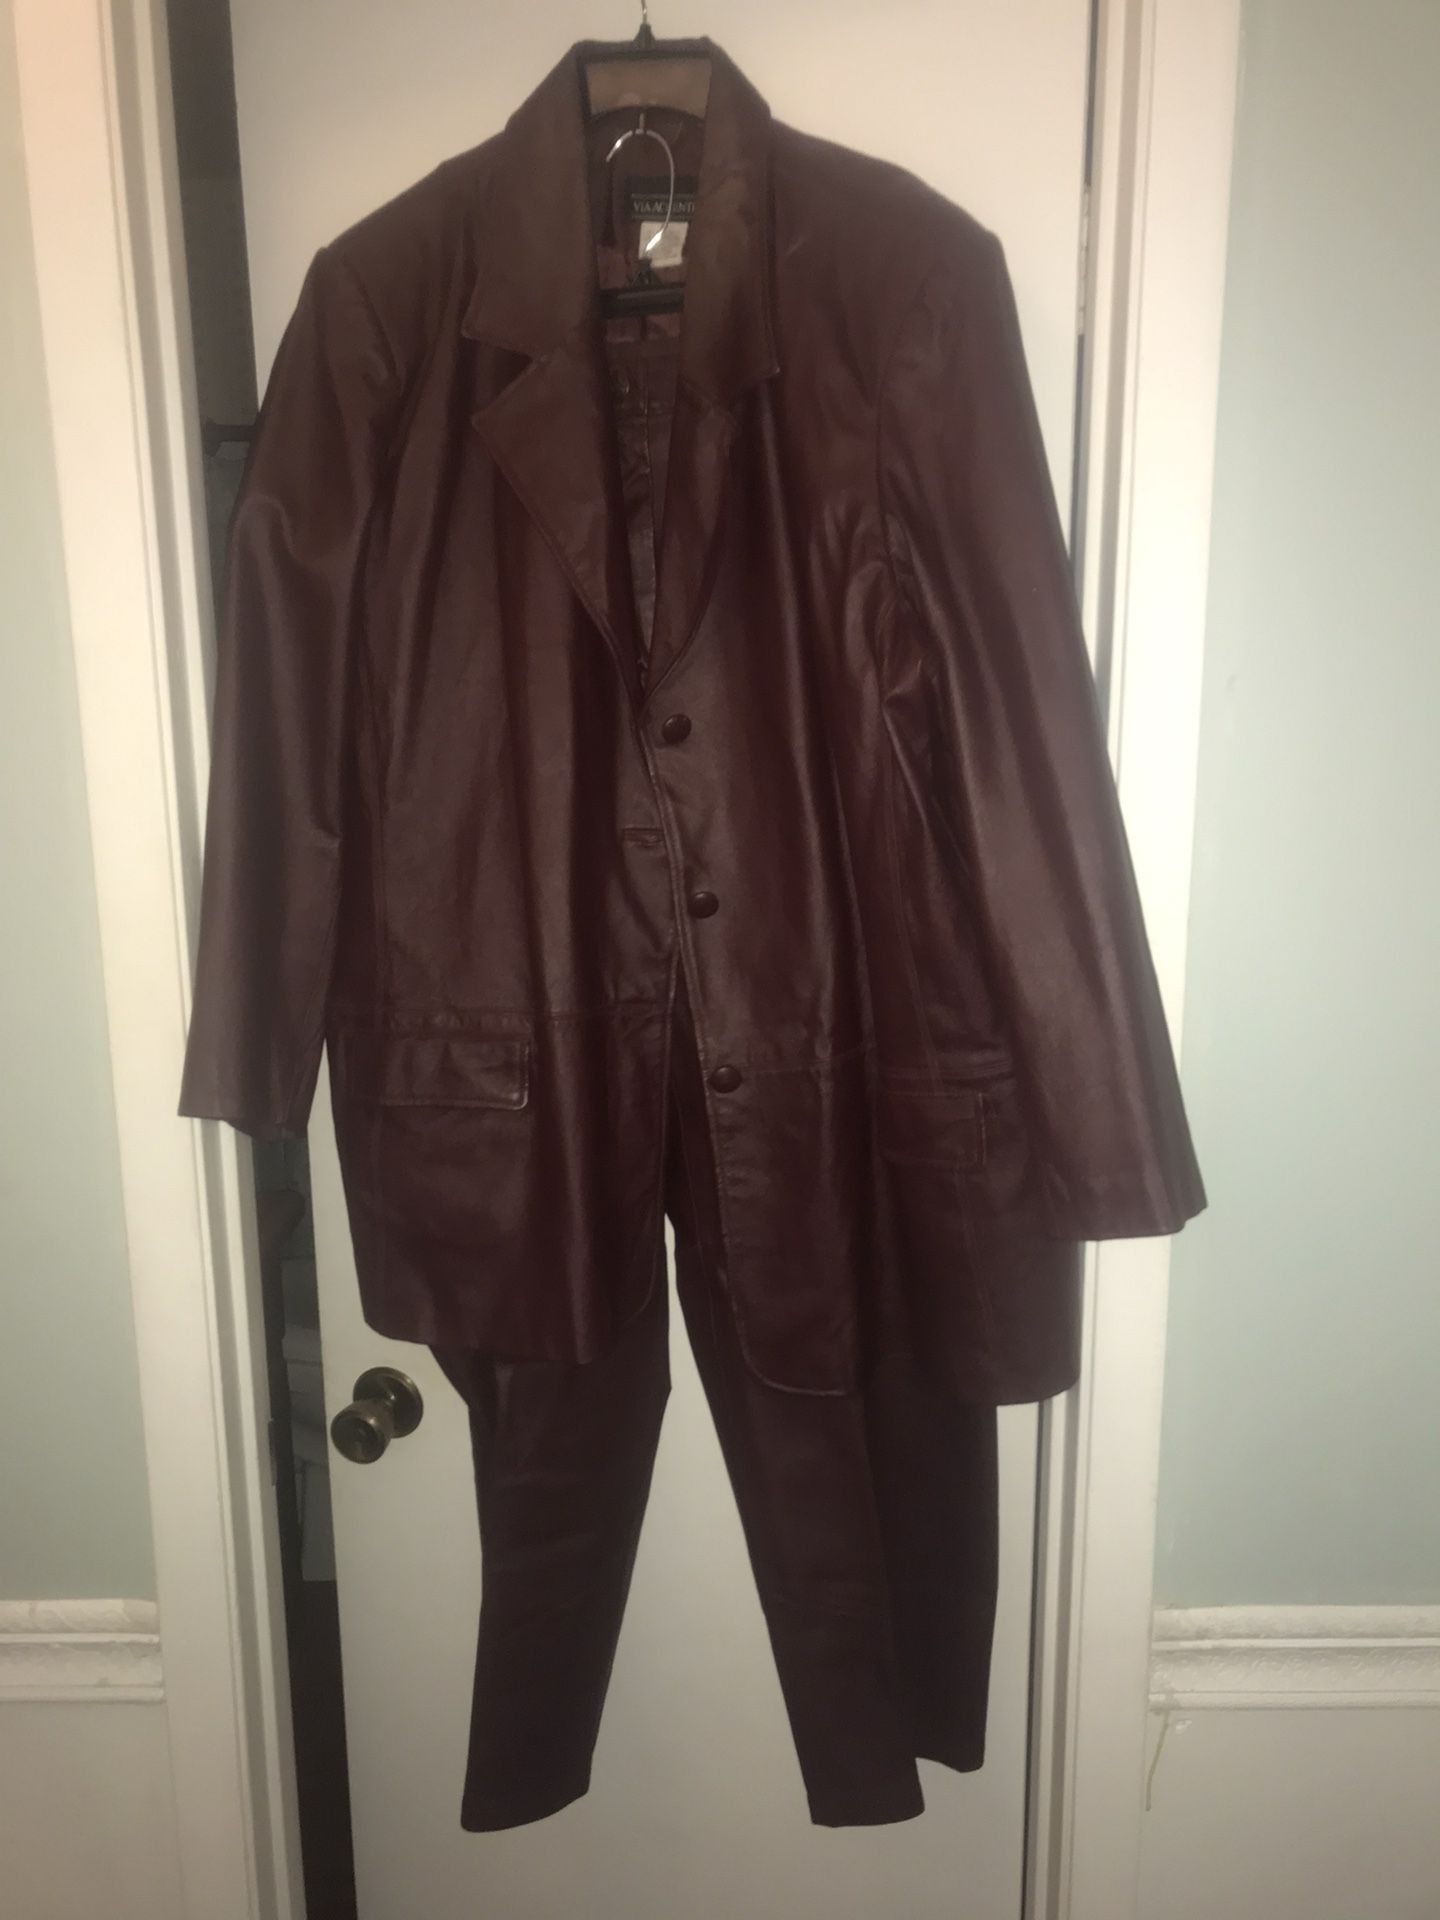 Via Accenti Burgundy Women Plus Size Genuine Leather Suit MSRP $360.00 J4 pant & B6 jacket. 2 piece suit. 